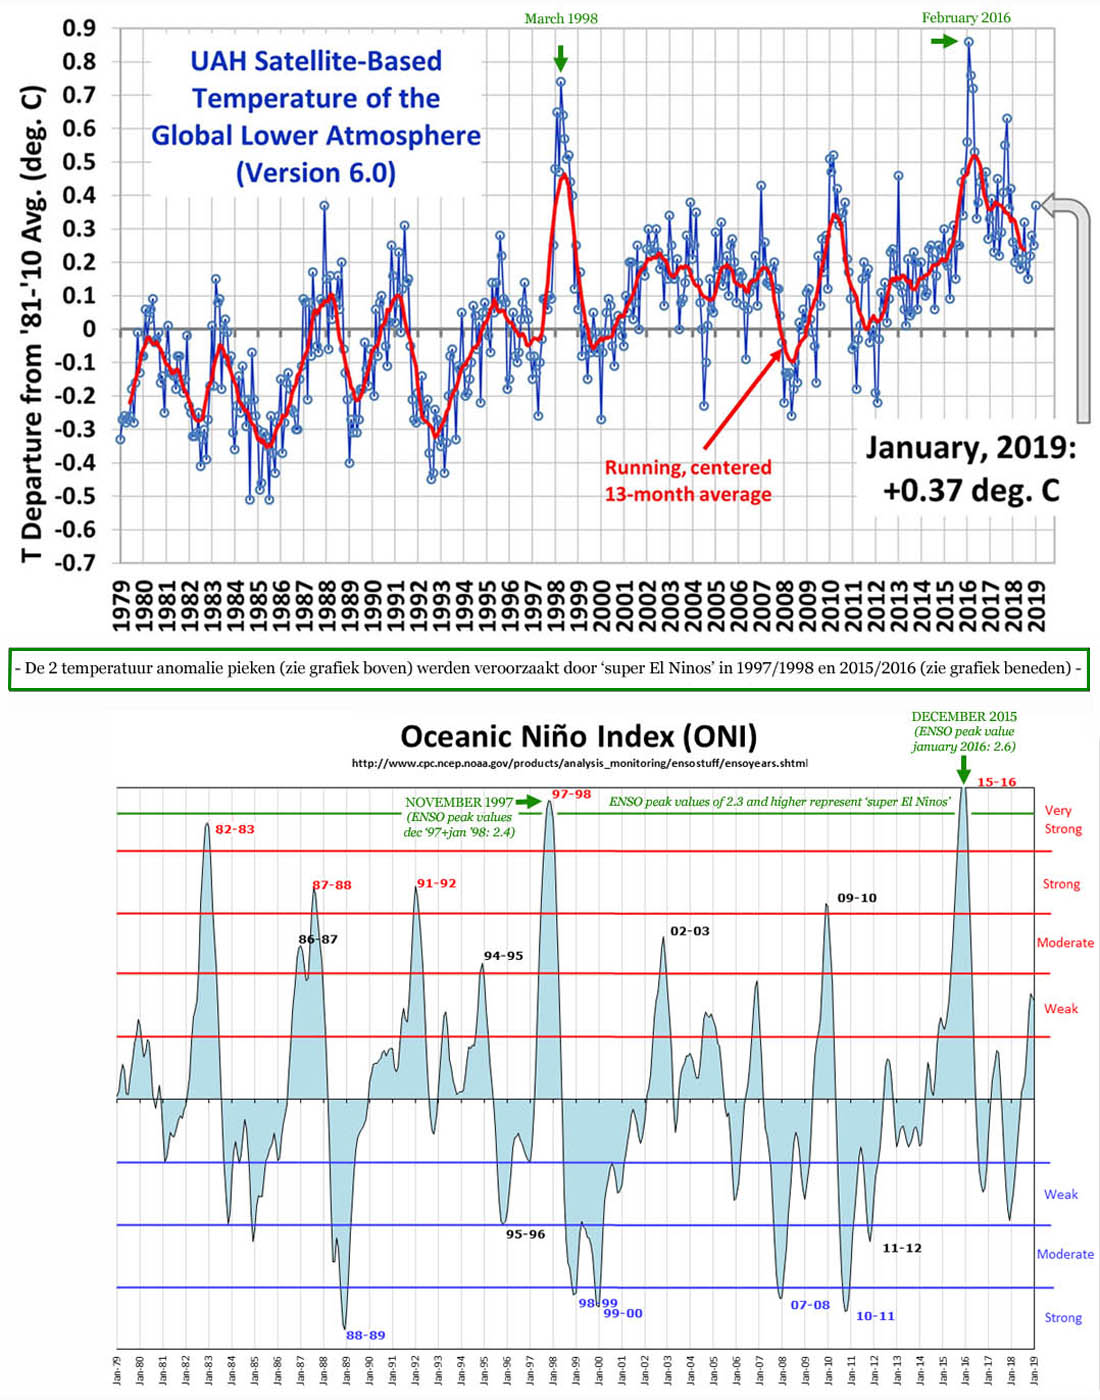 De temperatuur anomalie pieken van 1998 en 2016 werden veroorzaakt door super El Ninos.